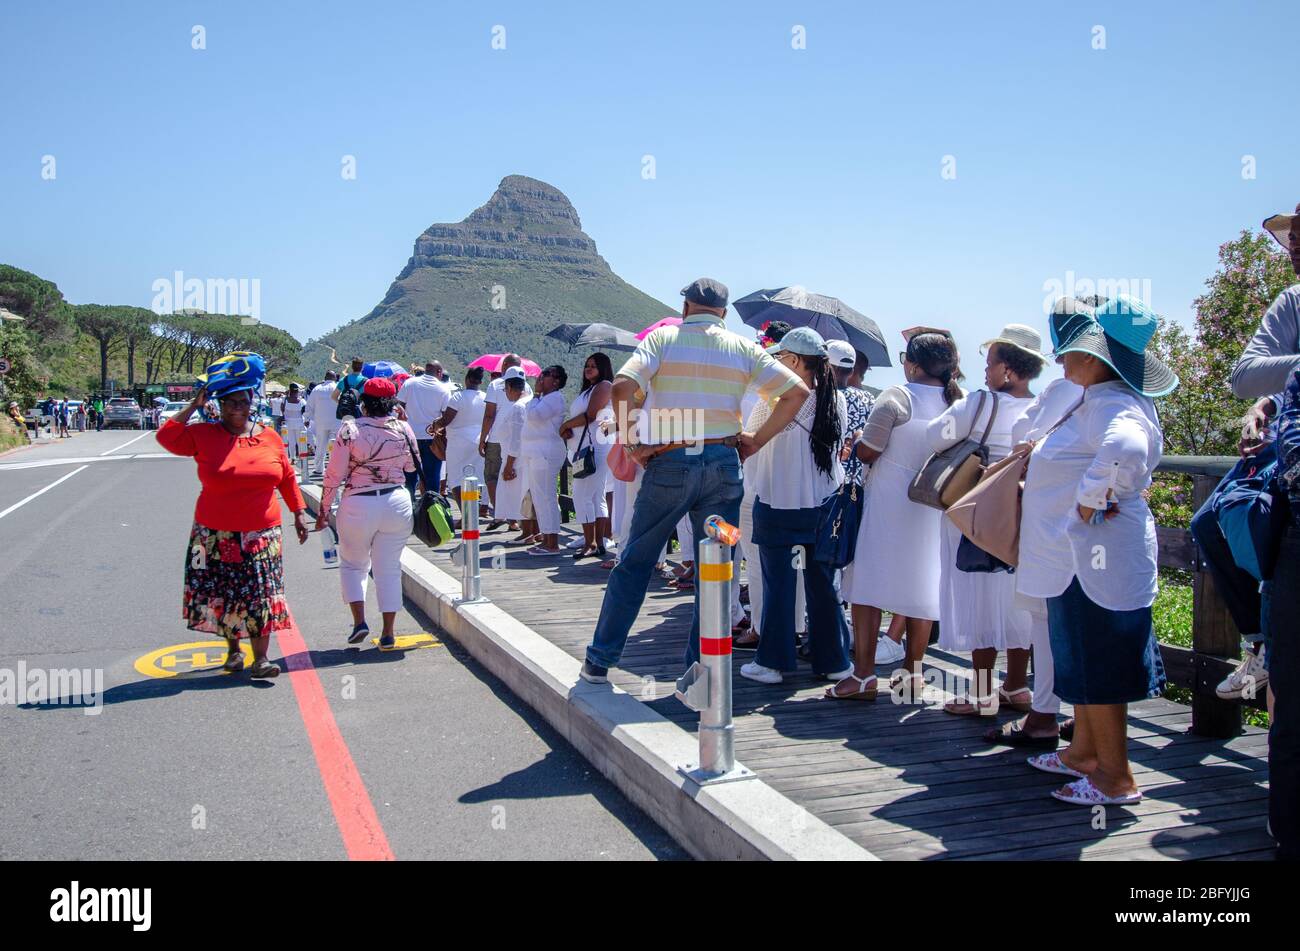 Une grande foule de touristes qui font la queue pour des billets au téléphérique de Table Mountain avec des lions se rendent à l'arrière-plan du Cap, en Afrique du Sud Banque D'Images